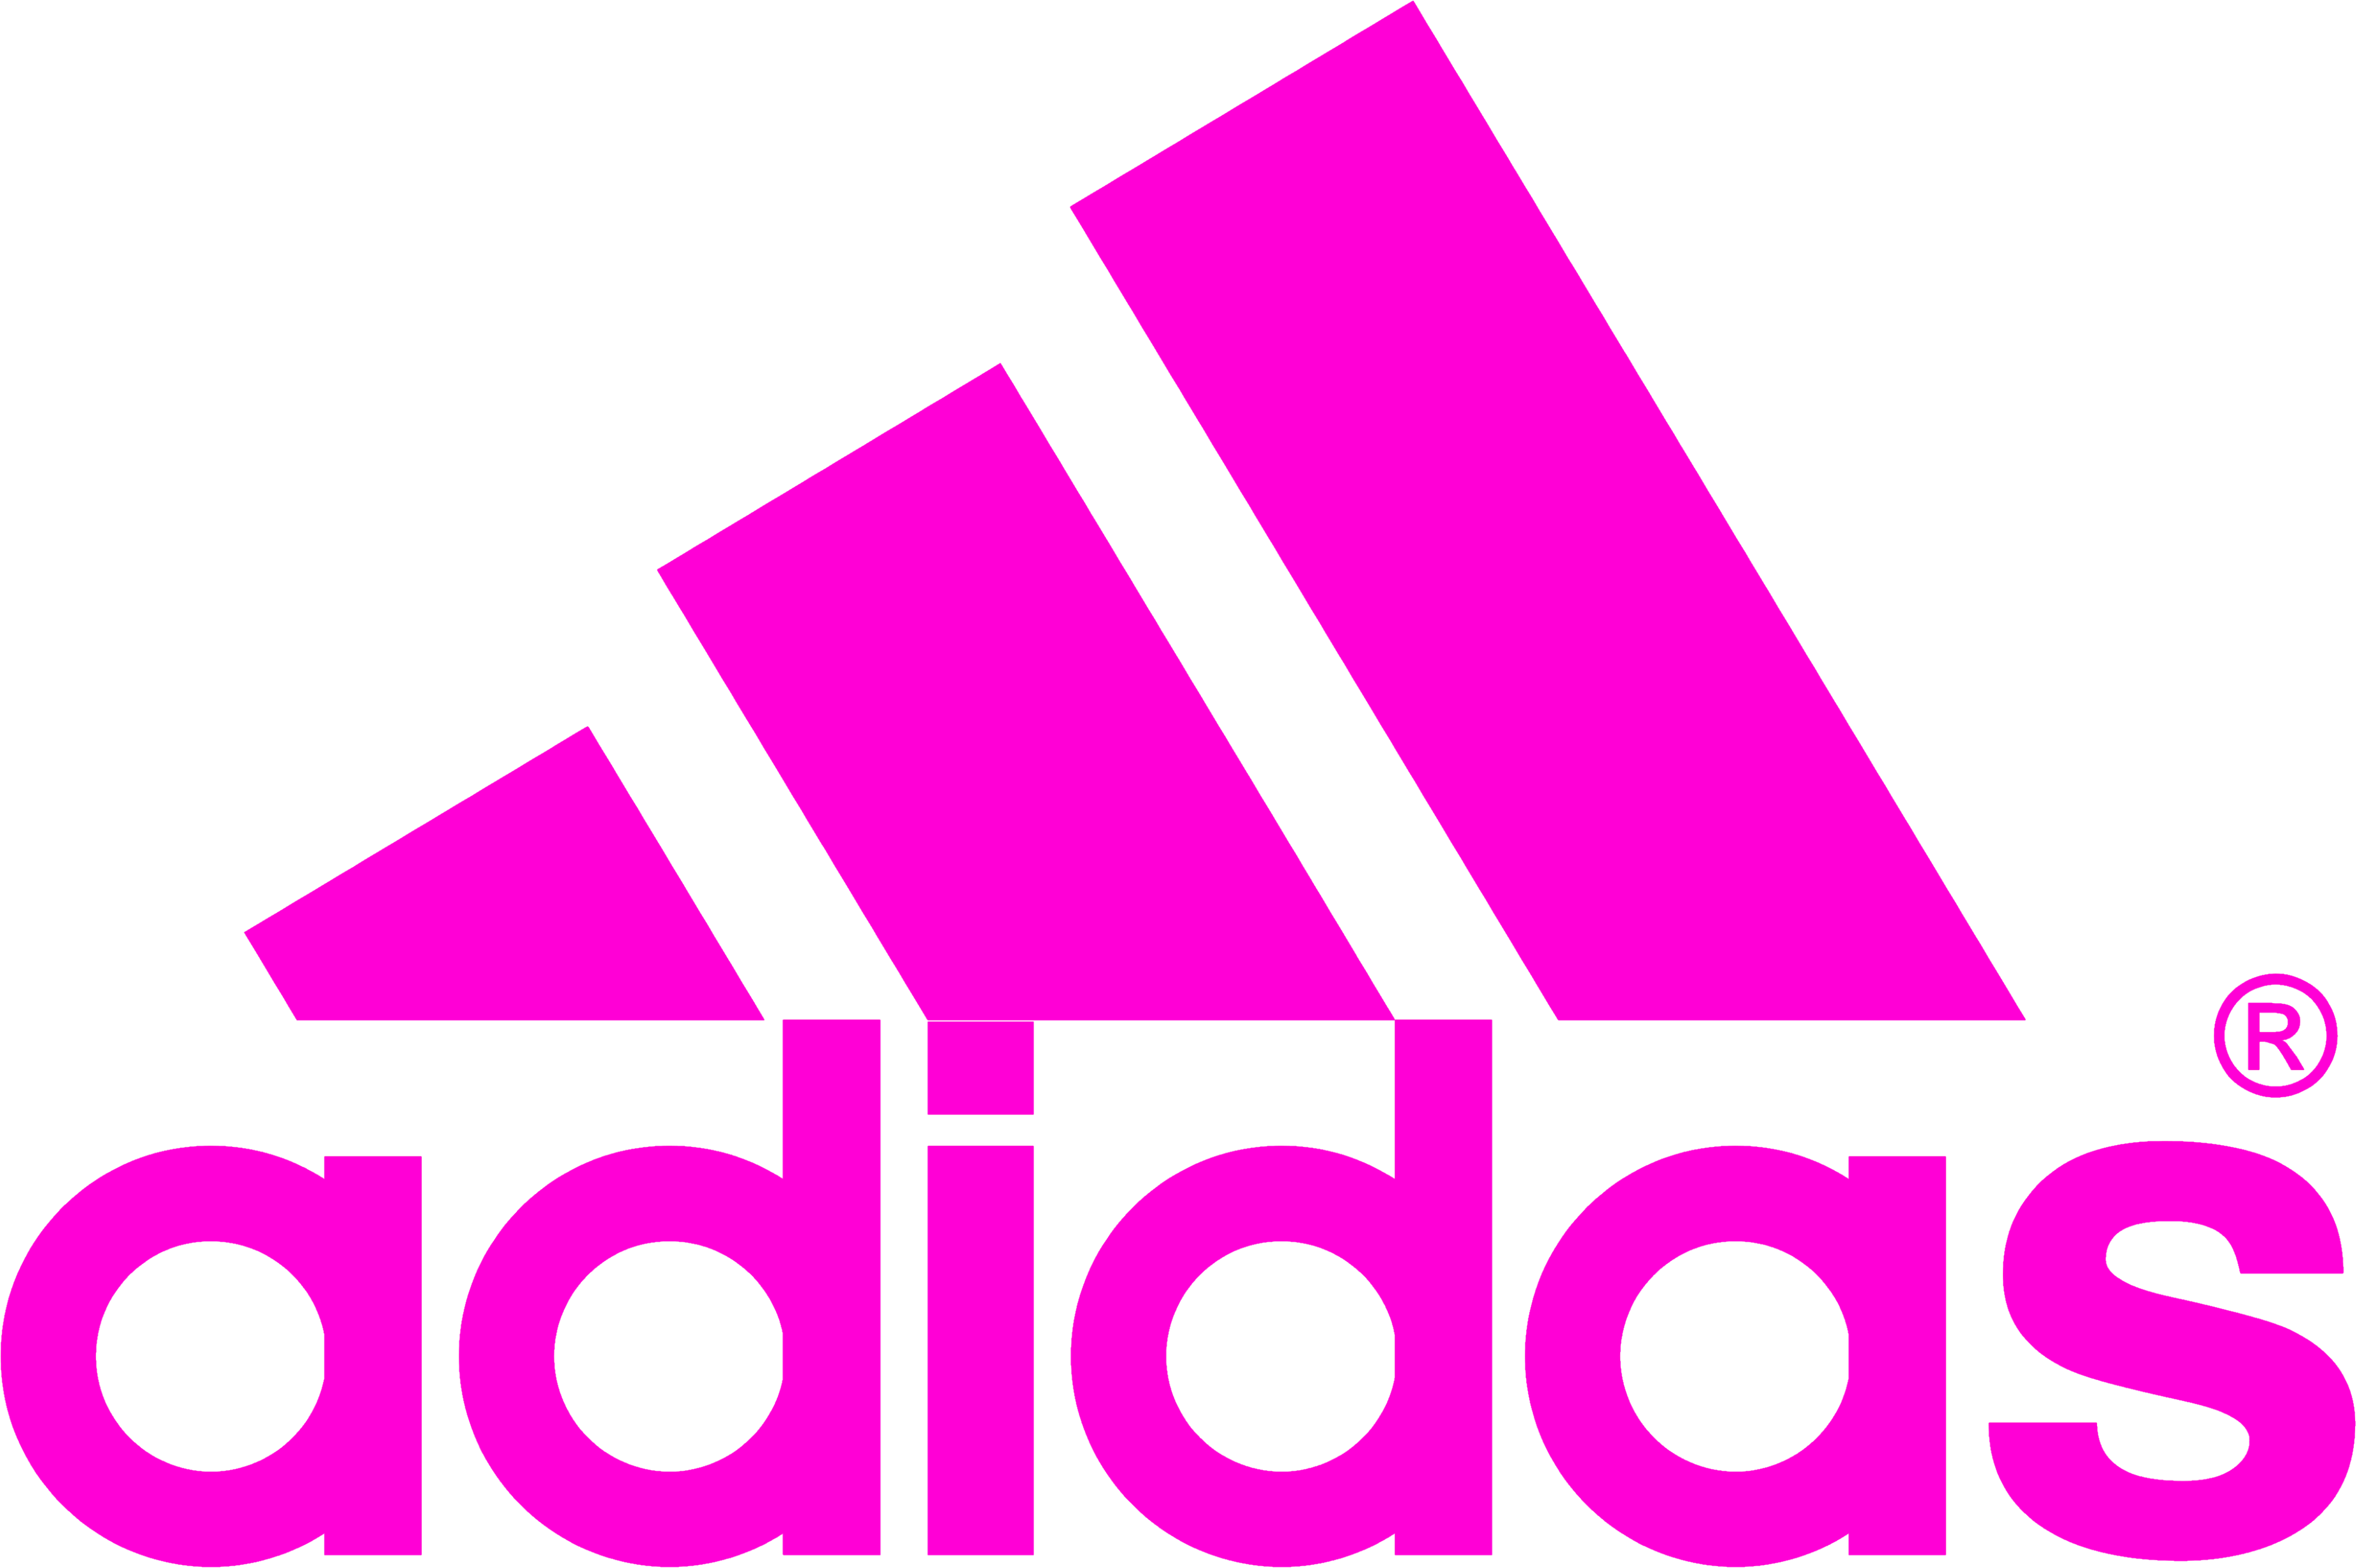 Pink Transparent Logo - Adidas logo PNG images free download